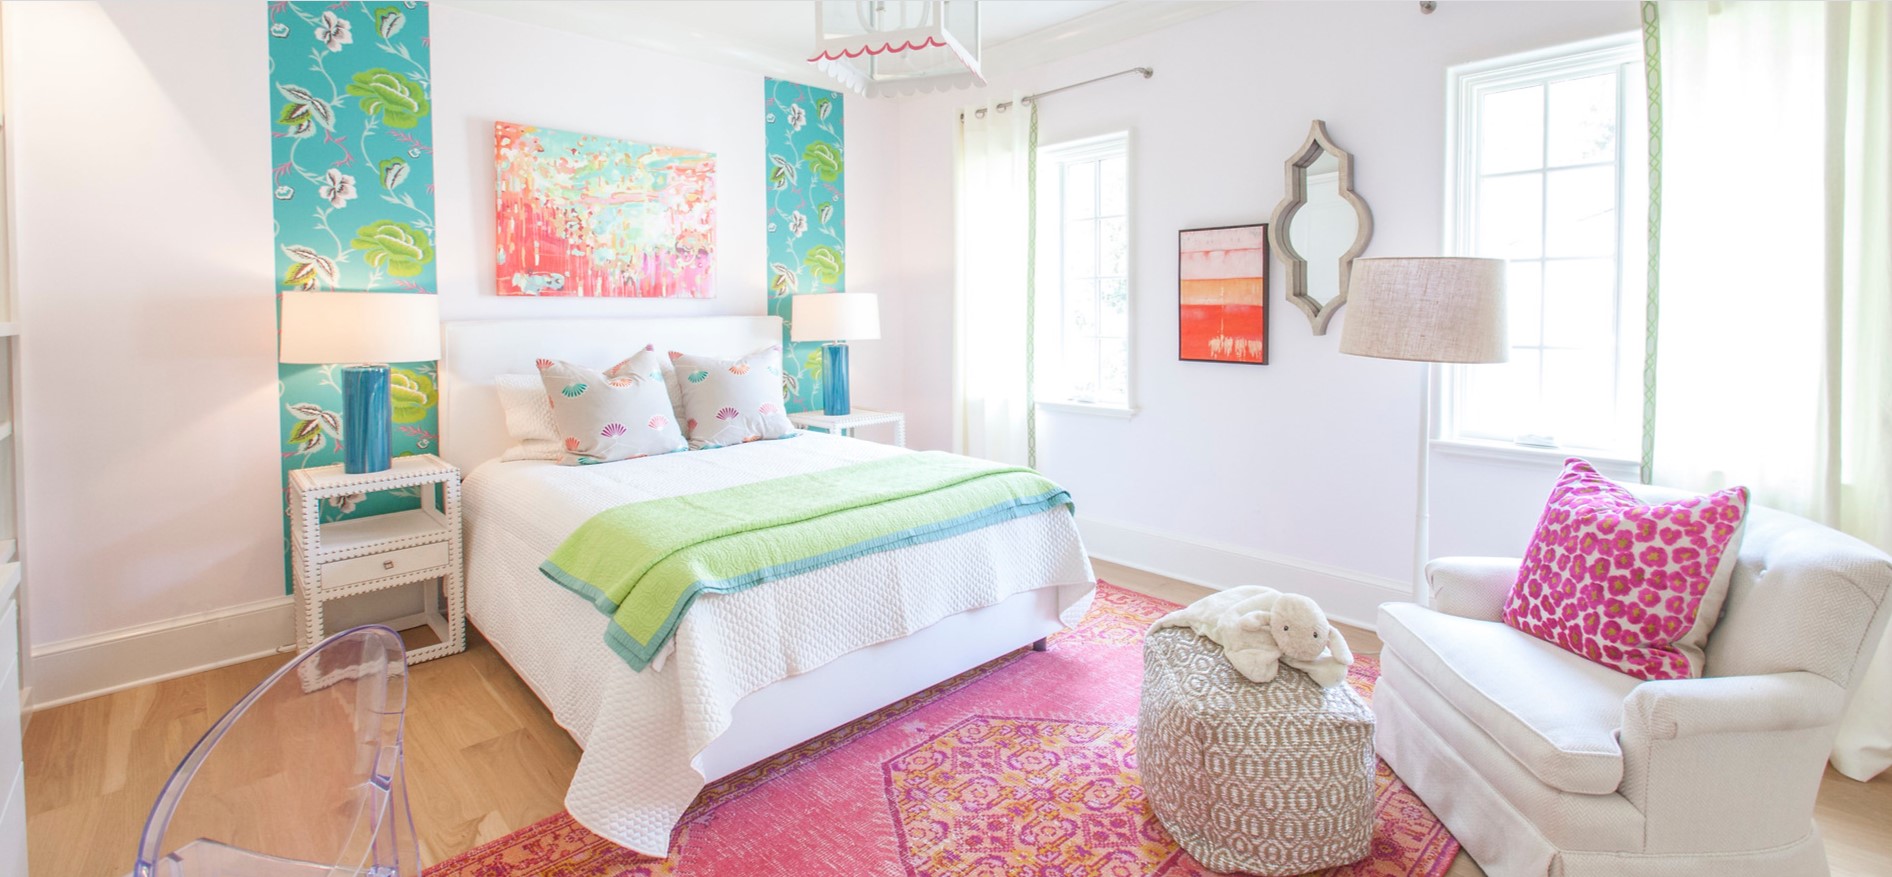 Идеальный интерьер для девочки-подростка: выбор стиля, цветовое оформление комнаты